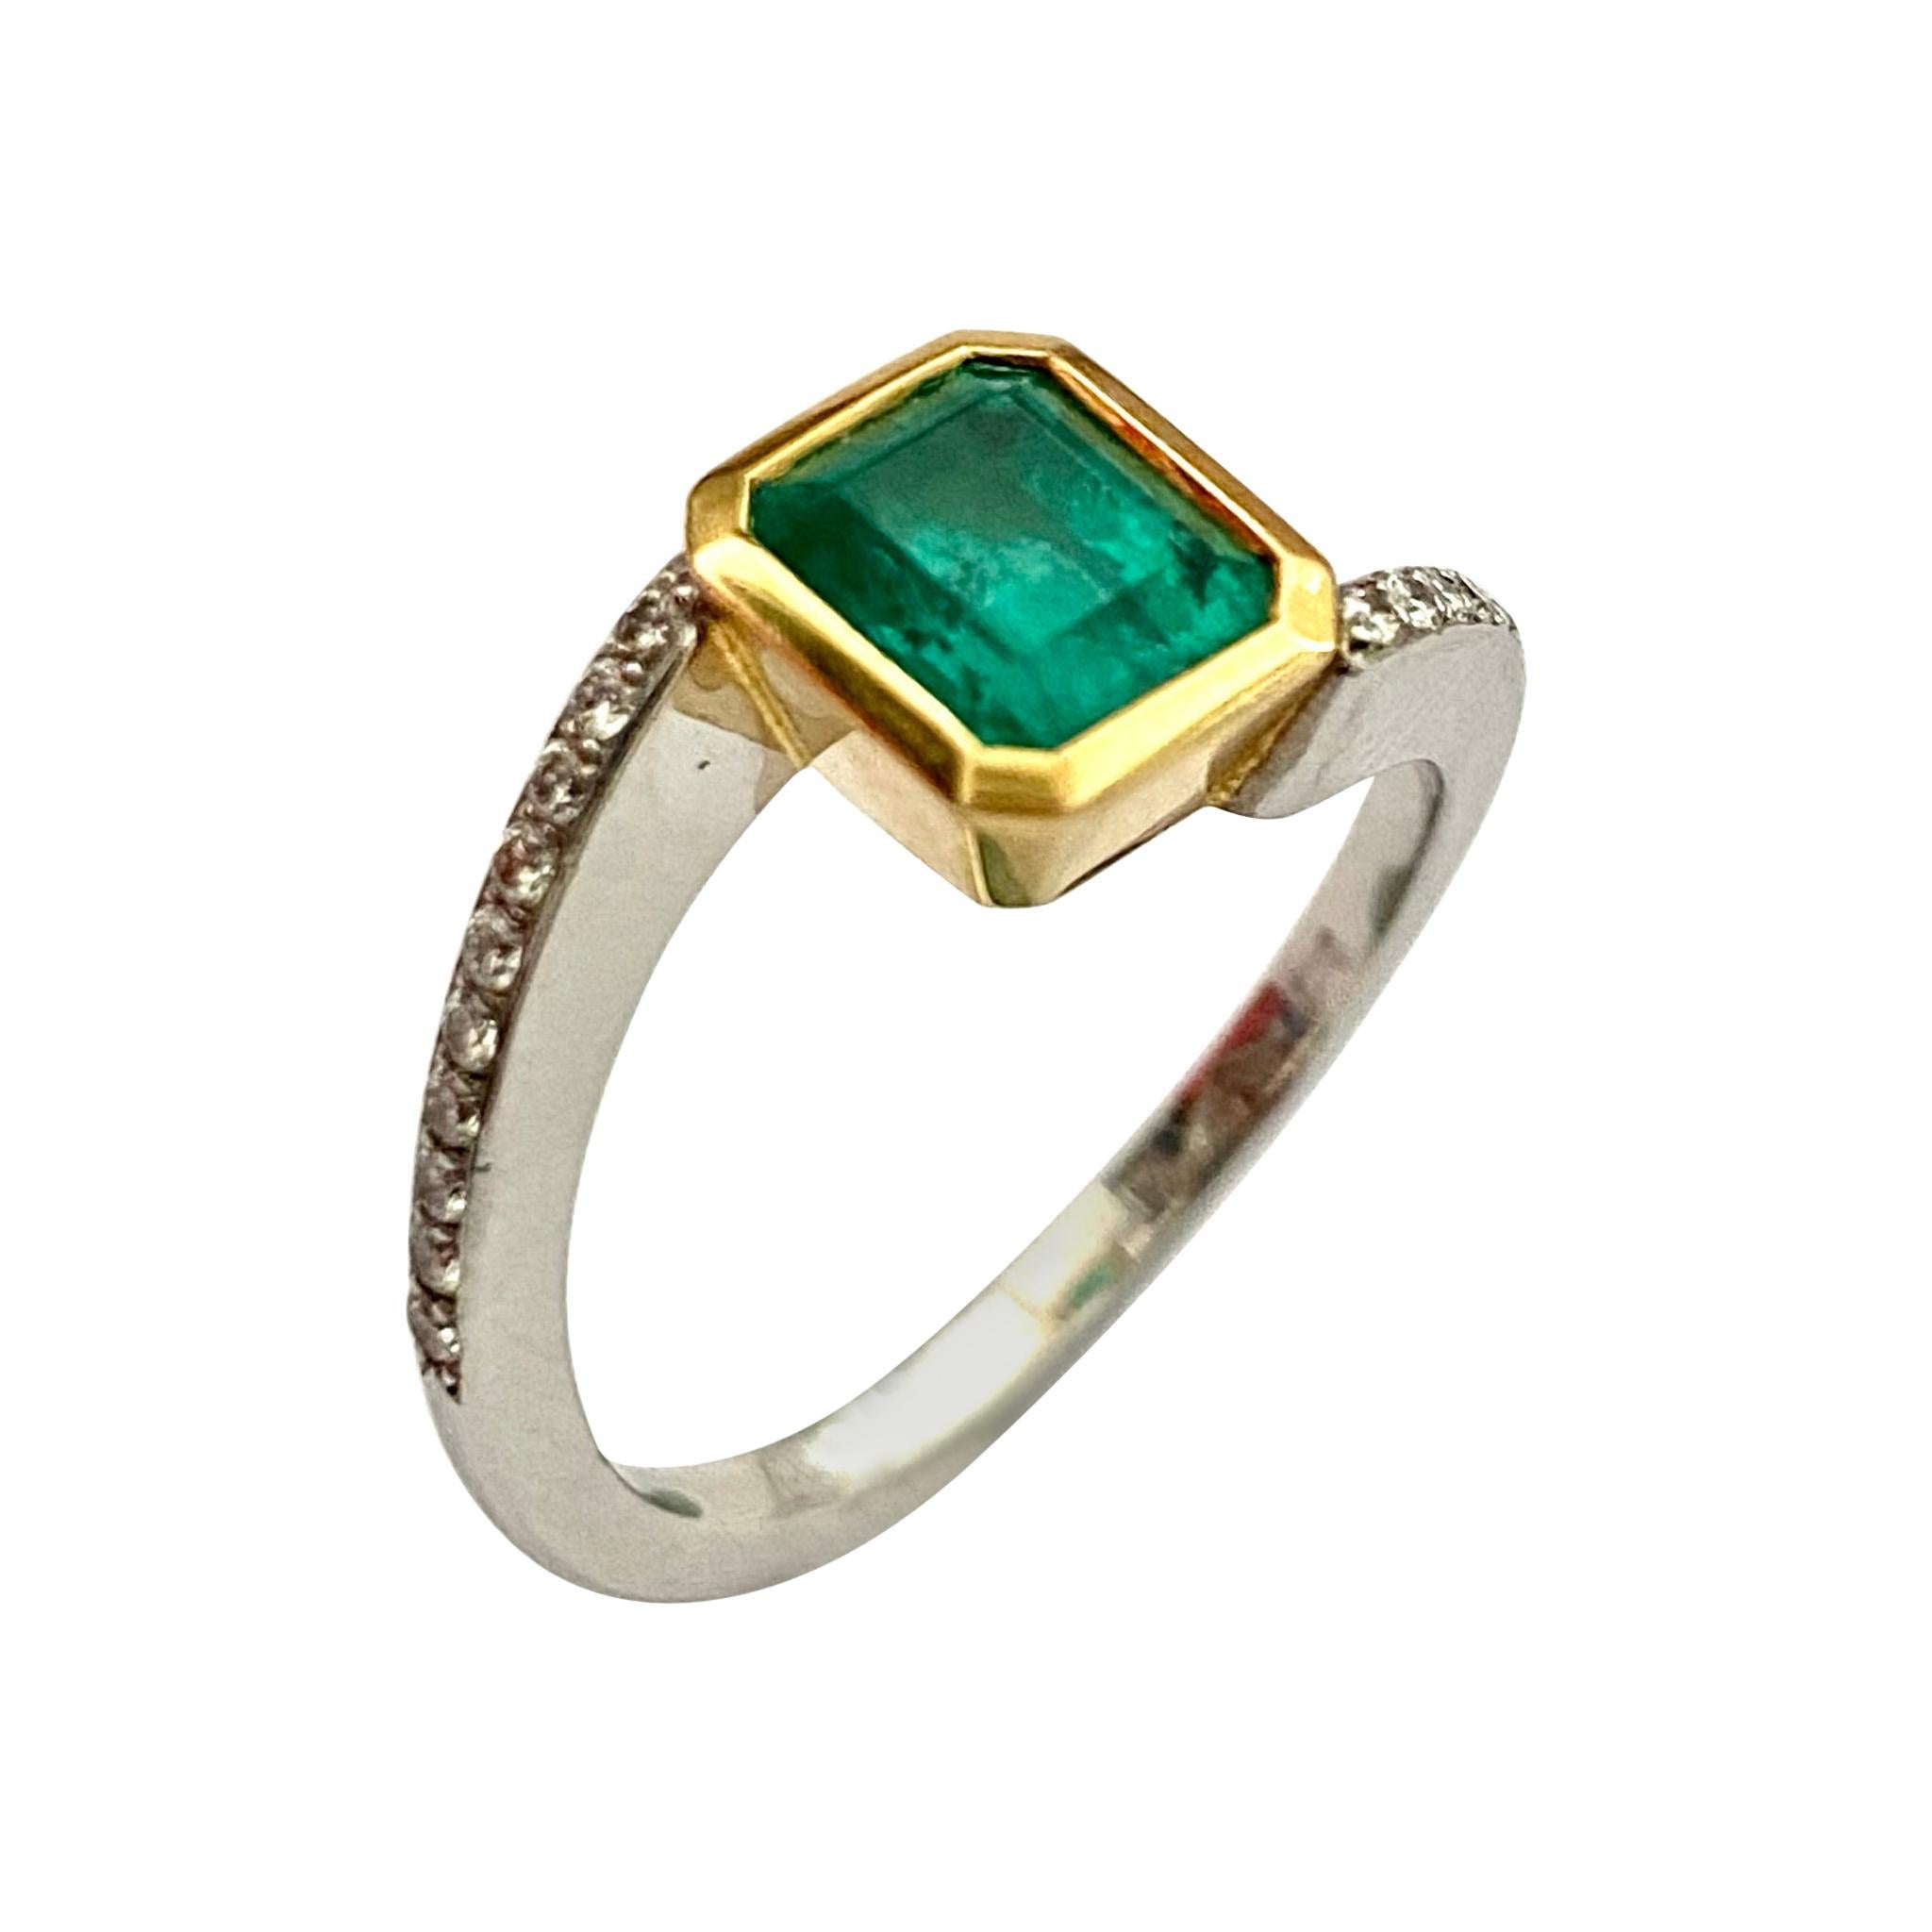 Kolumbianischer Smaragd von 1,30 Karat und Diamanten in einem handgefertigten Ring aus 18 Karat Gold